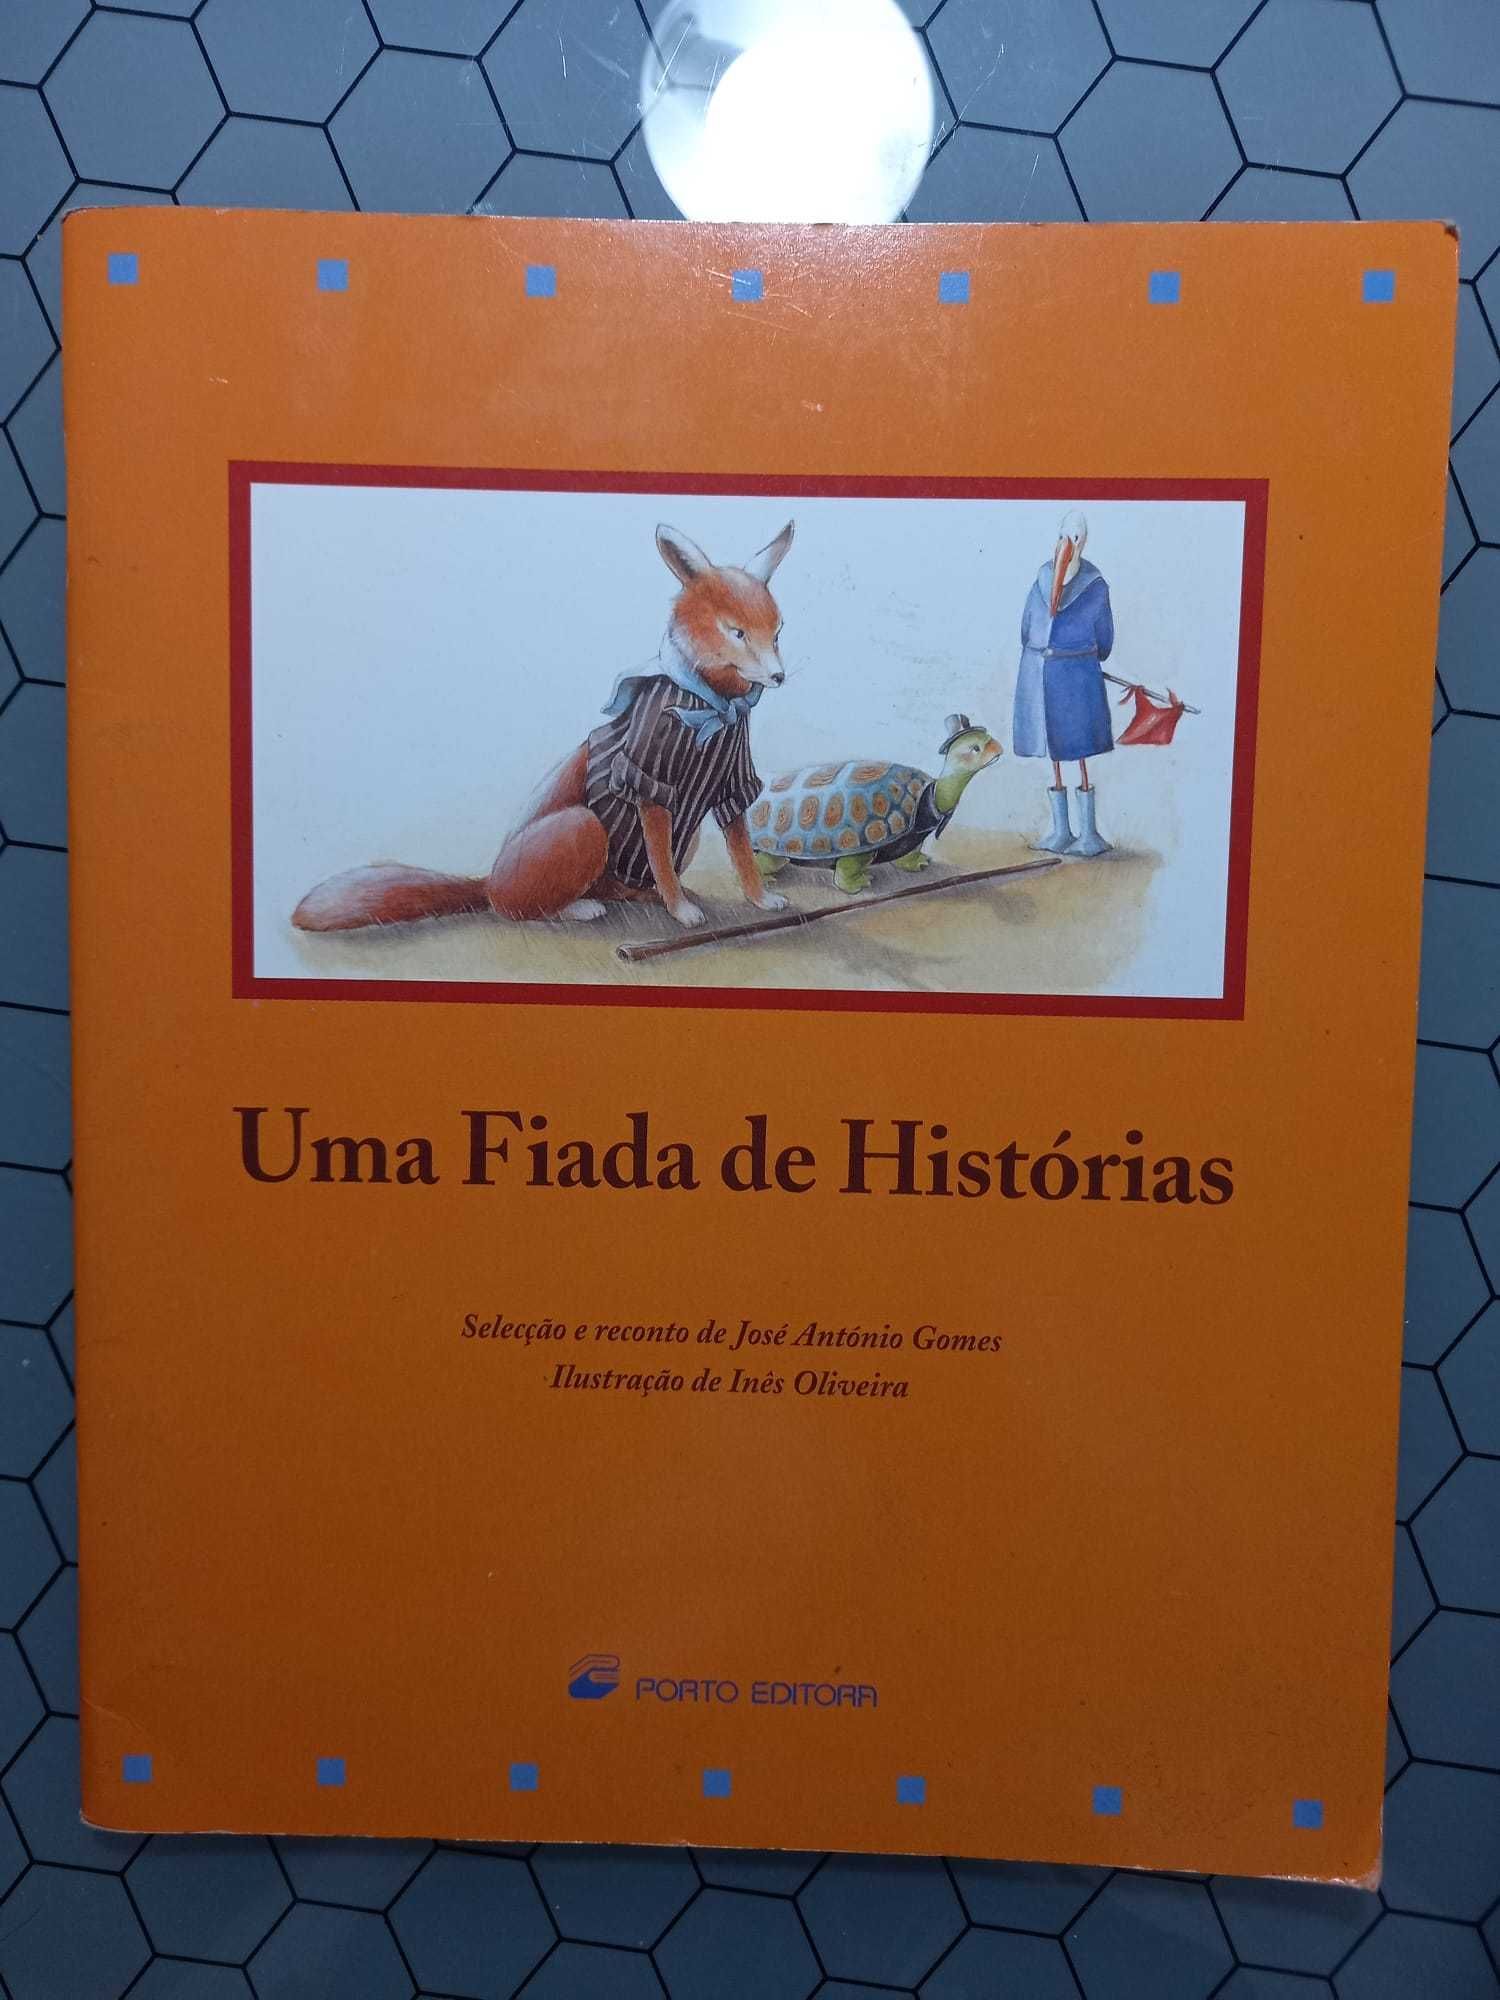 Livro "Uma fada de HIstorias", José António Gomes